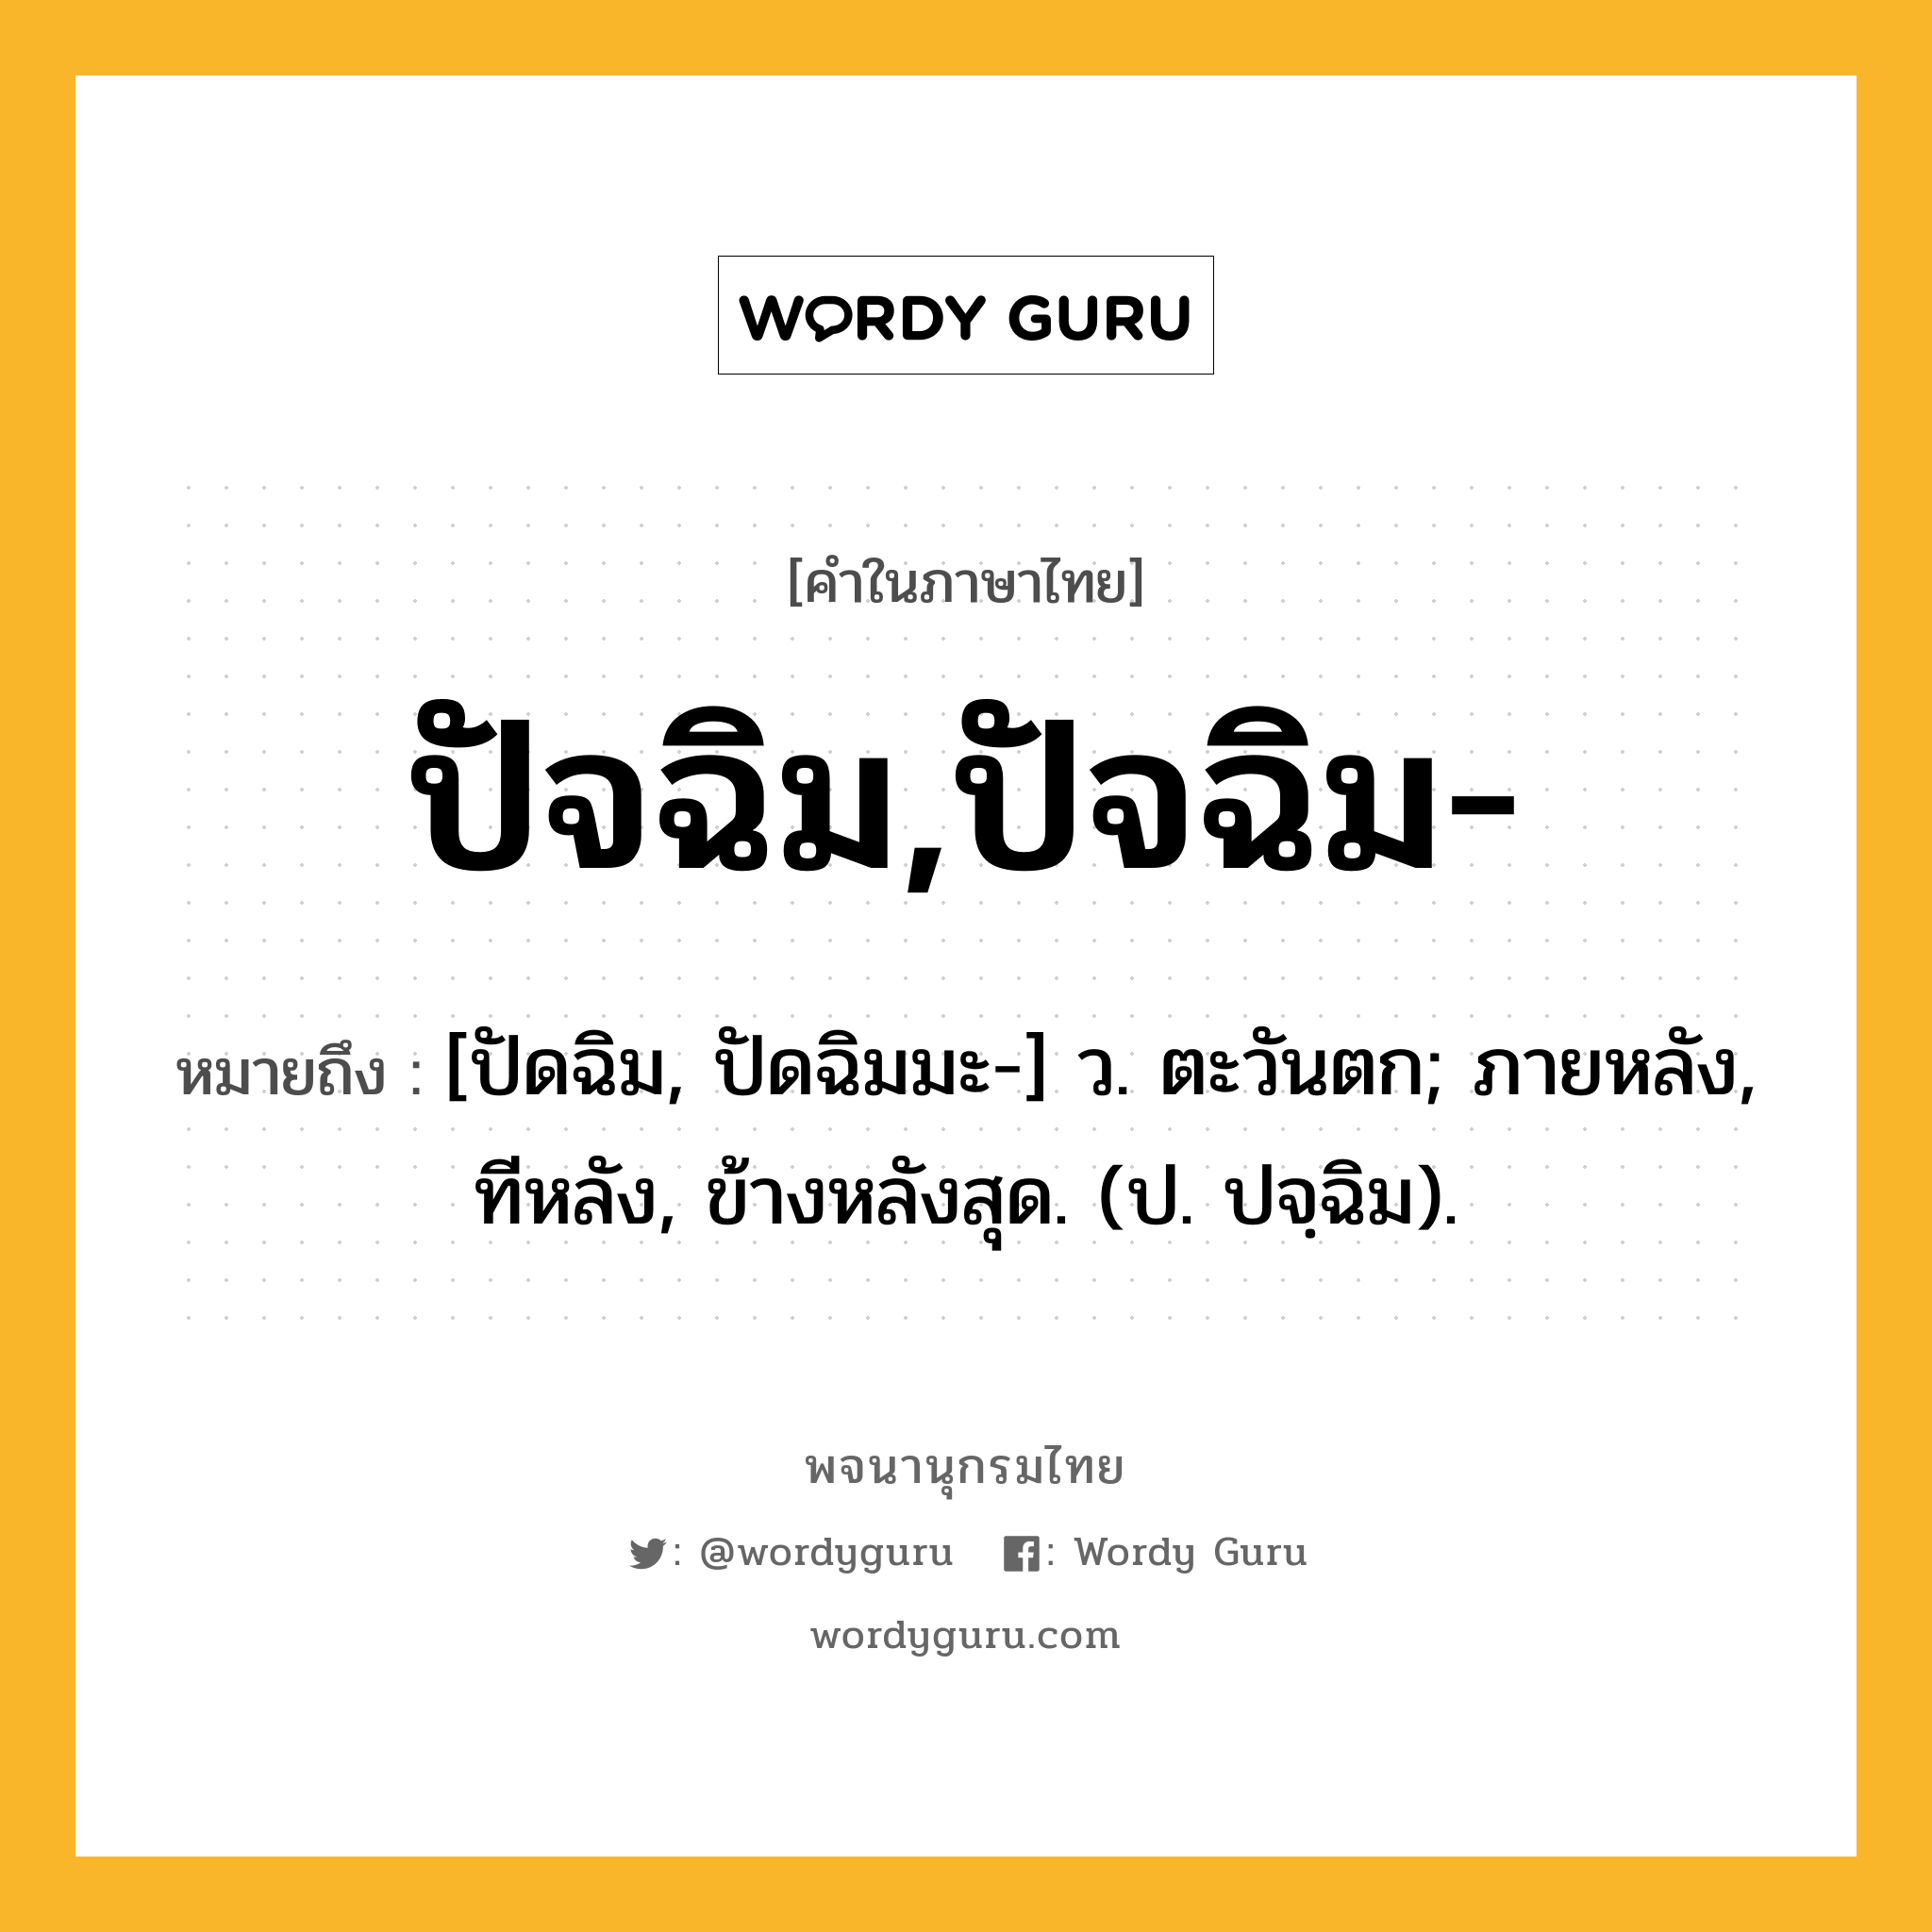 ปัจฉิม,ปัจฉิม- หมายถึงอะไร?, คำในภาษาไทย ปัจฉิม,ปัจฉิม- หมายถึง [ปัดฉิม, ปัดฉิมมะ-] ว. ตะวันตก; ภายหลัง, ทีหลัง, ข้างหลังสุด. (ป. ปจฺฉิม).